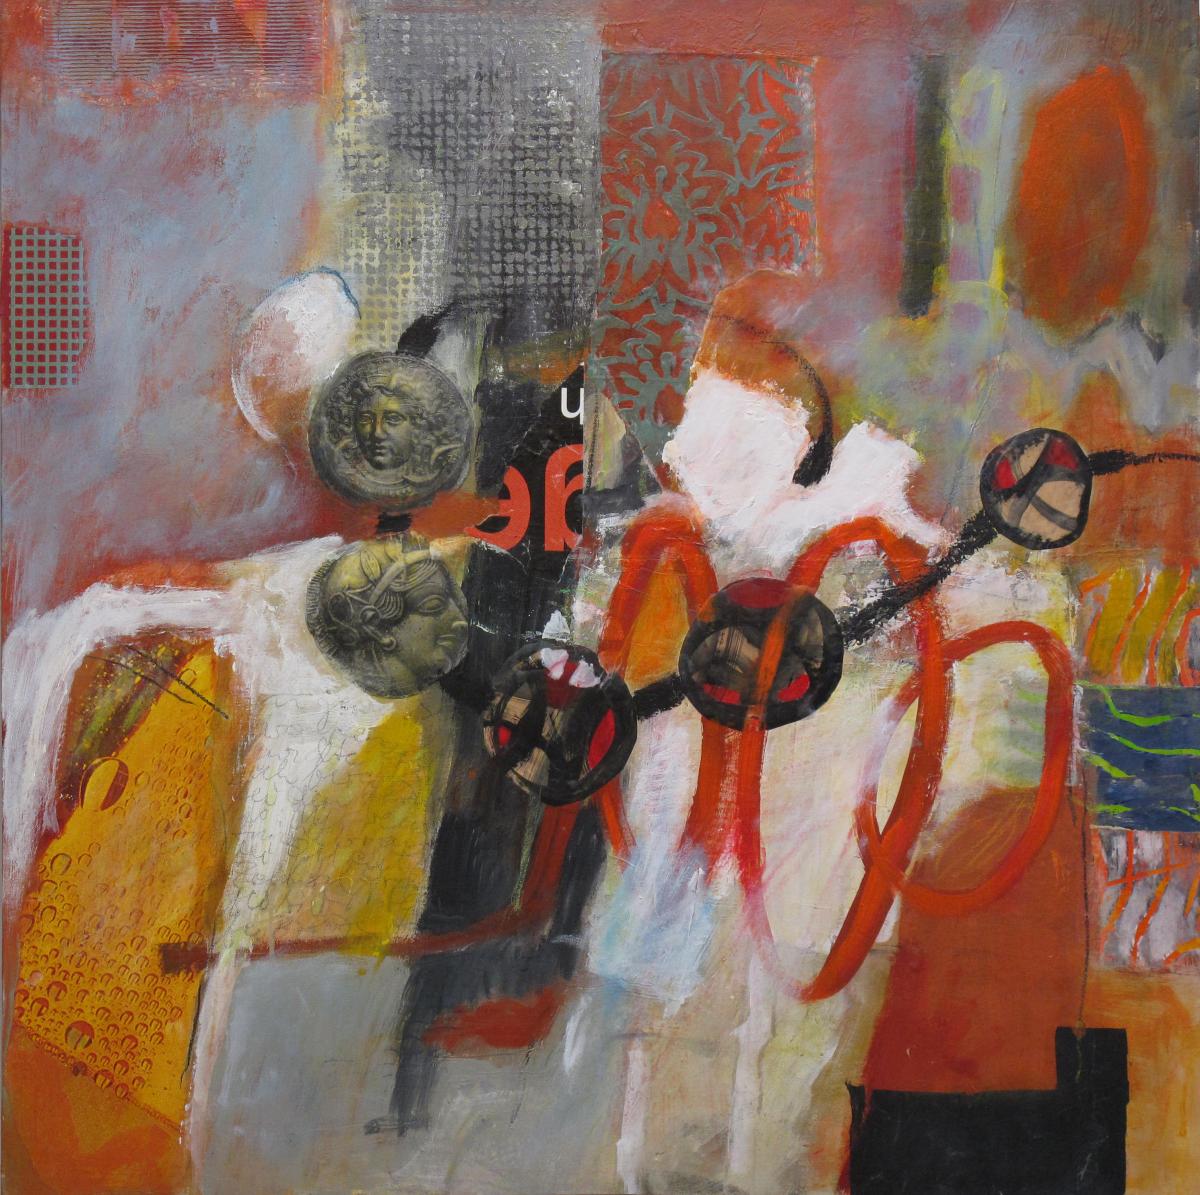 Göttinnen II, 2011, Acryl und Collage auf Leinwand, 100 x 100 cm